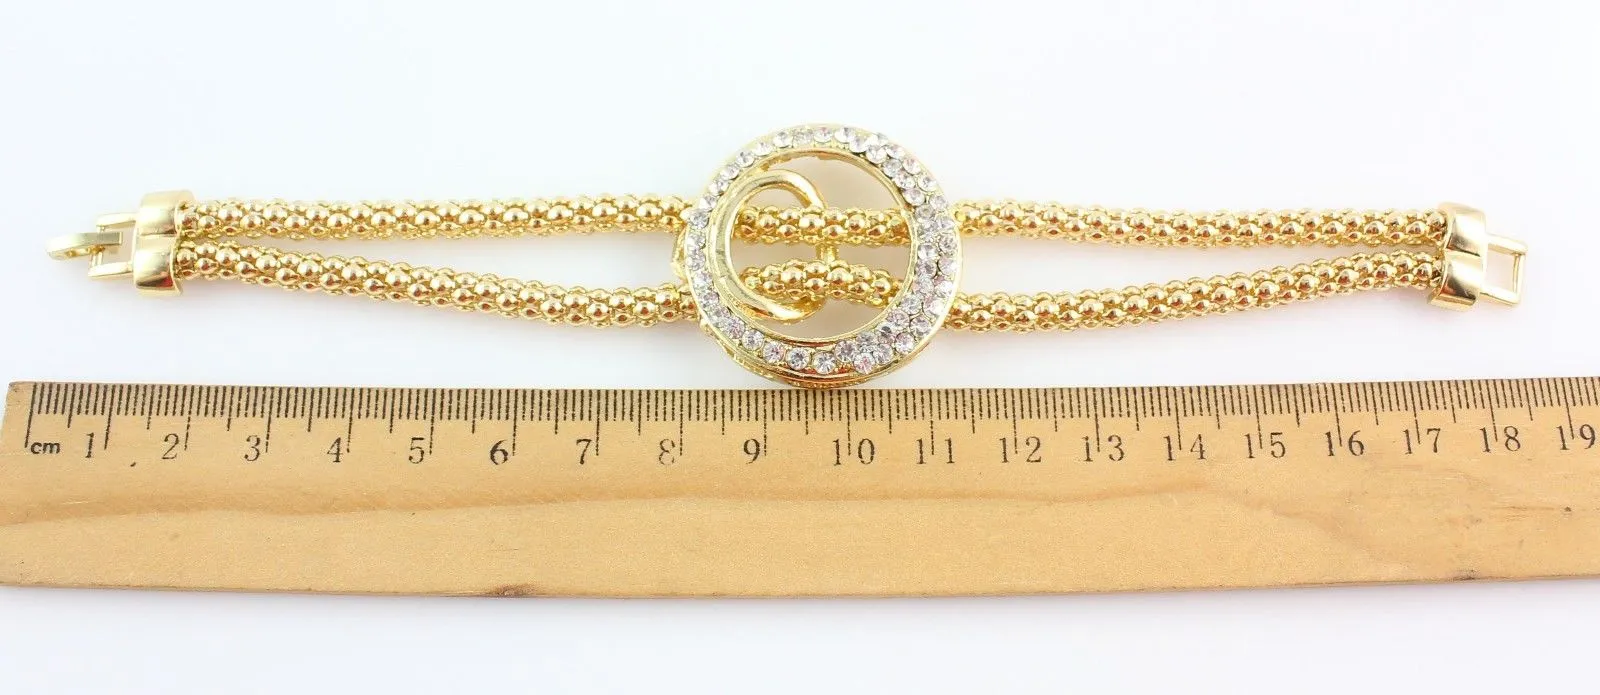 Moda banhado a ouro cadeia de cobra colar de cristal pulseira anel brincos conjuntos de jóias